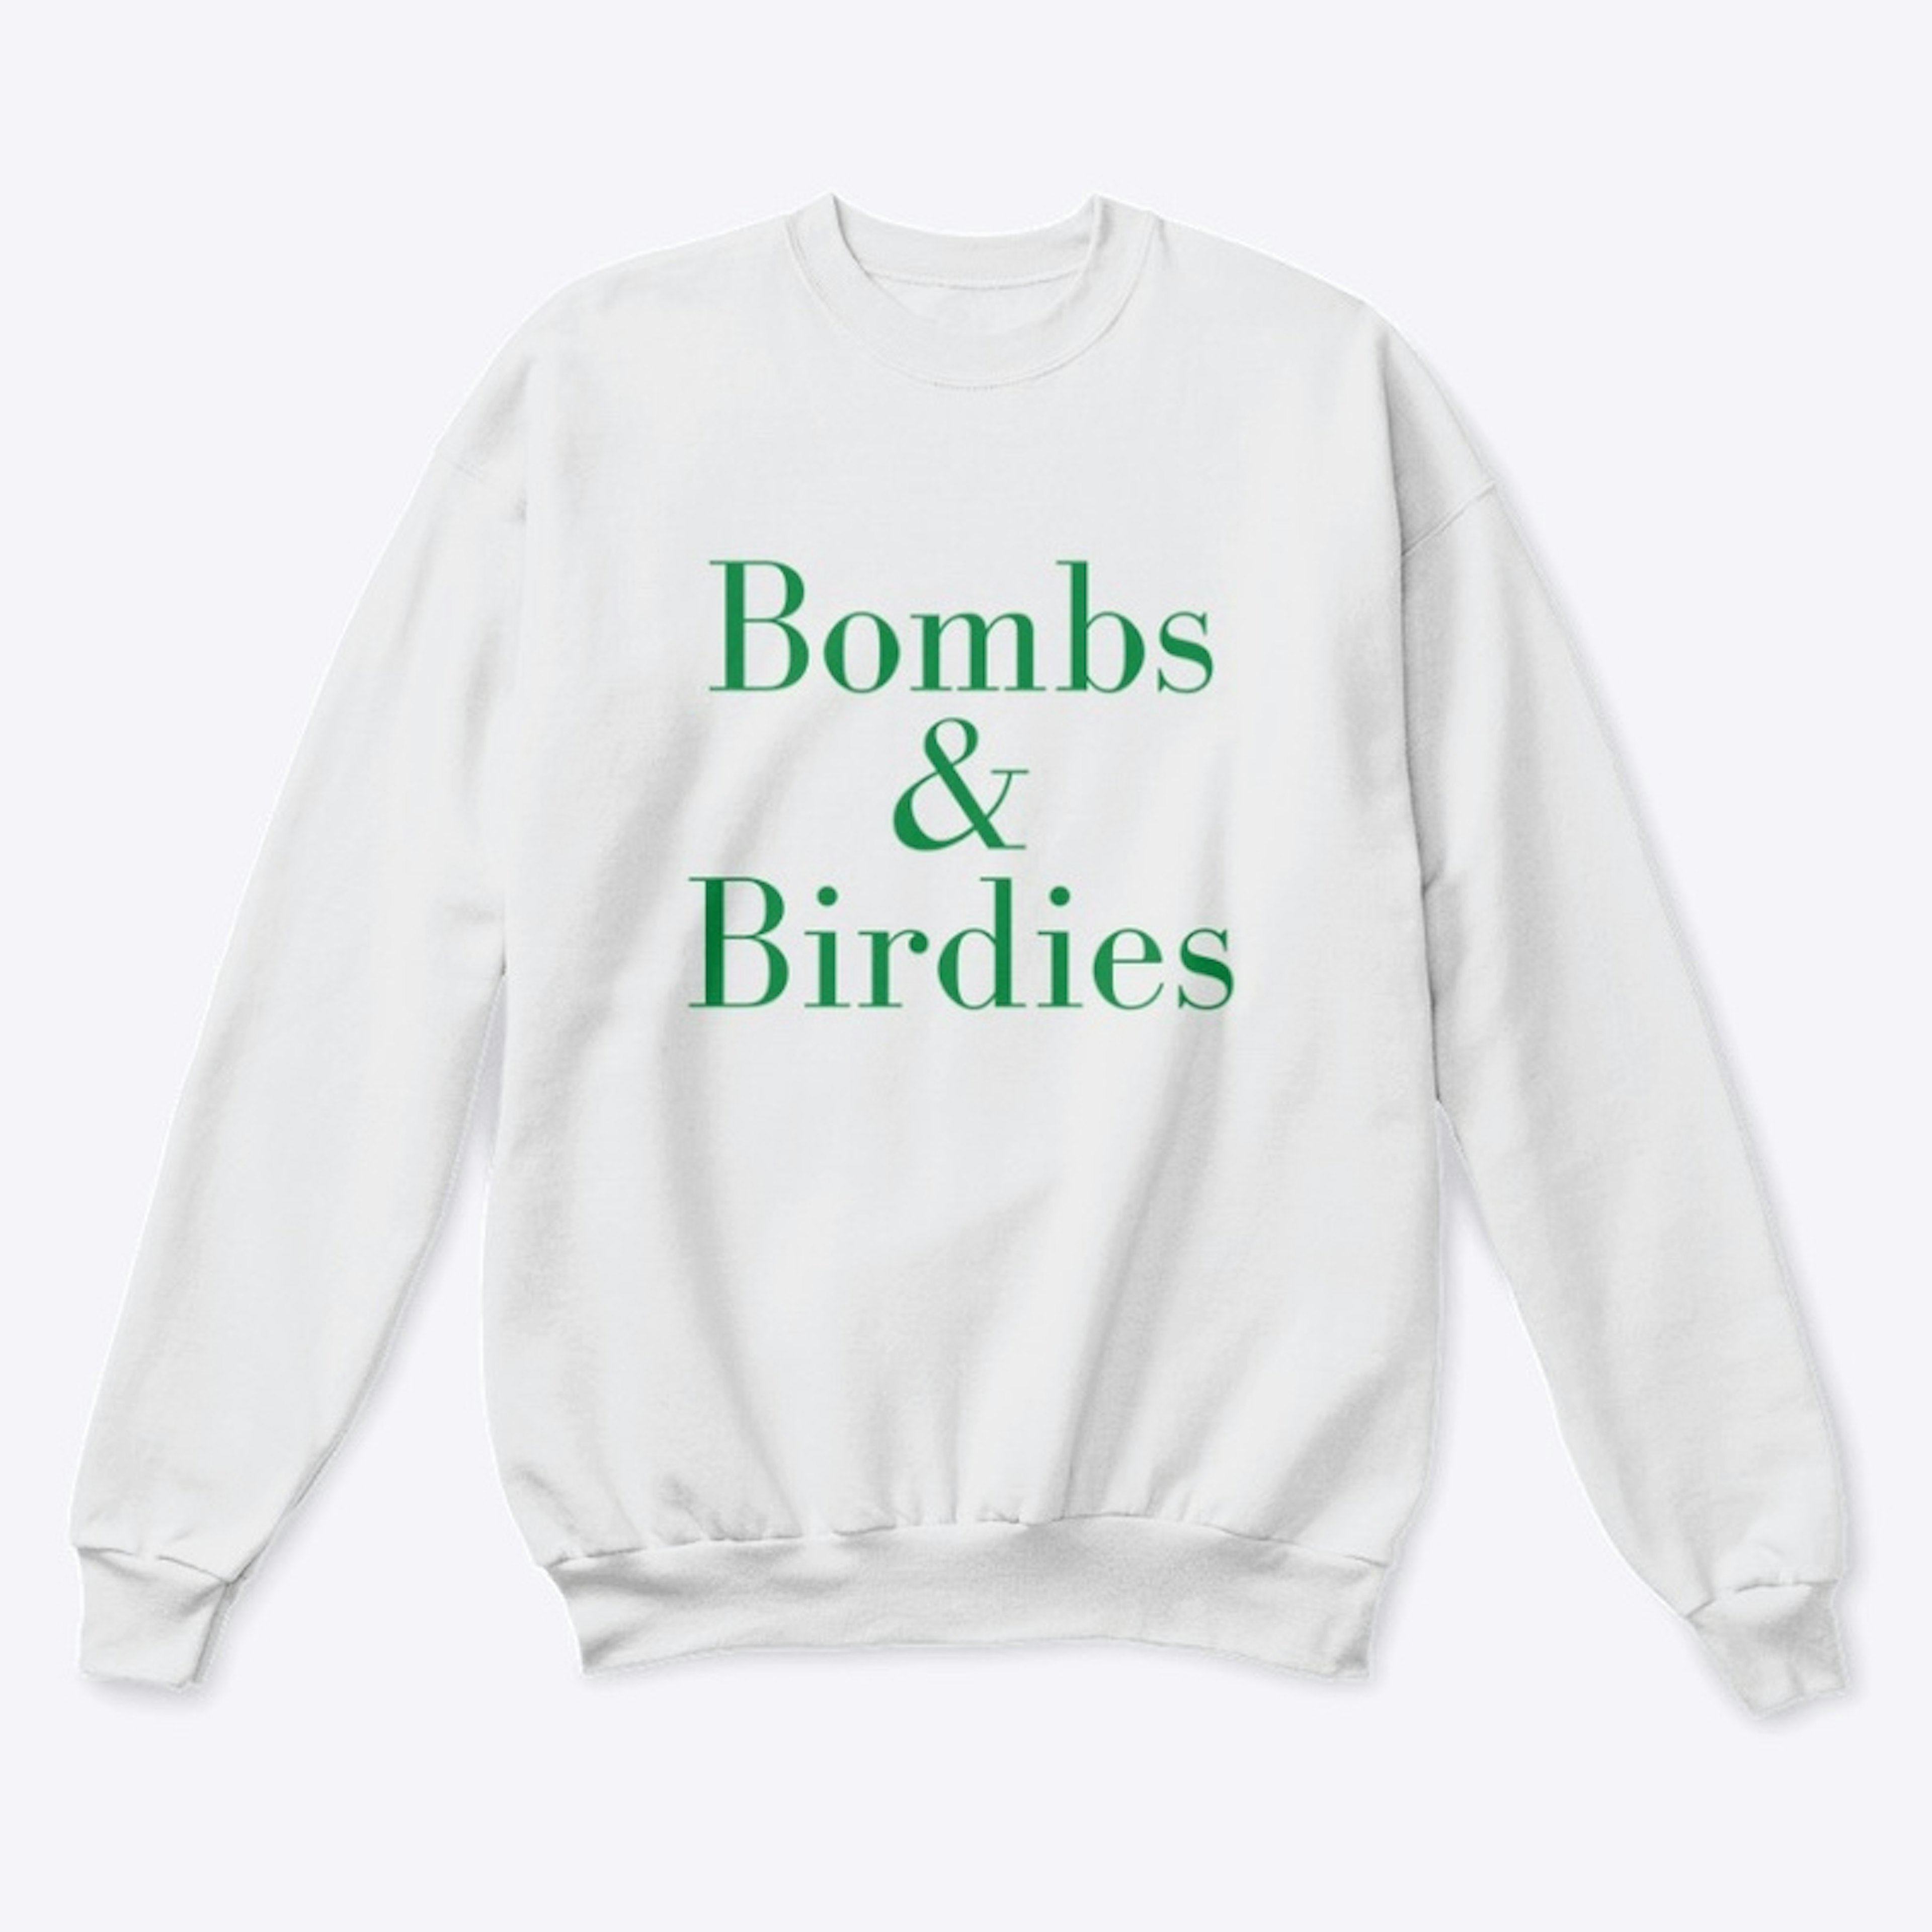 Bombs & Birdies - Green